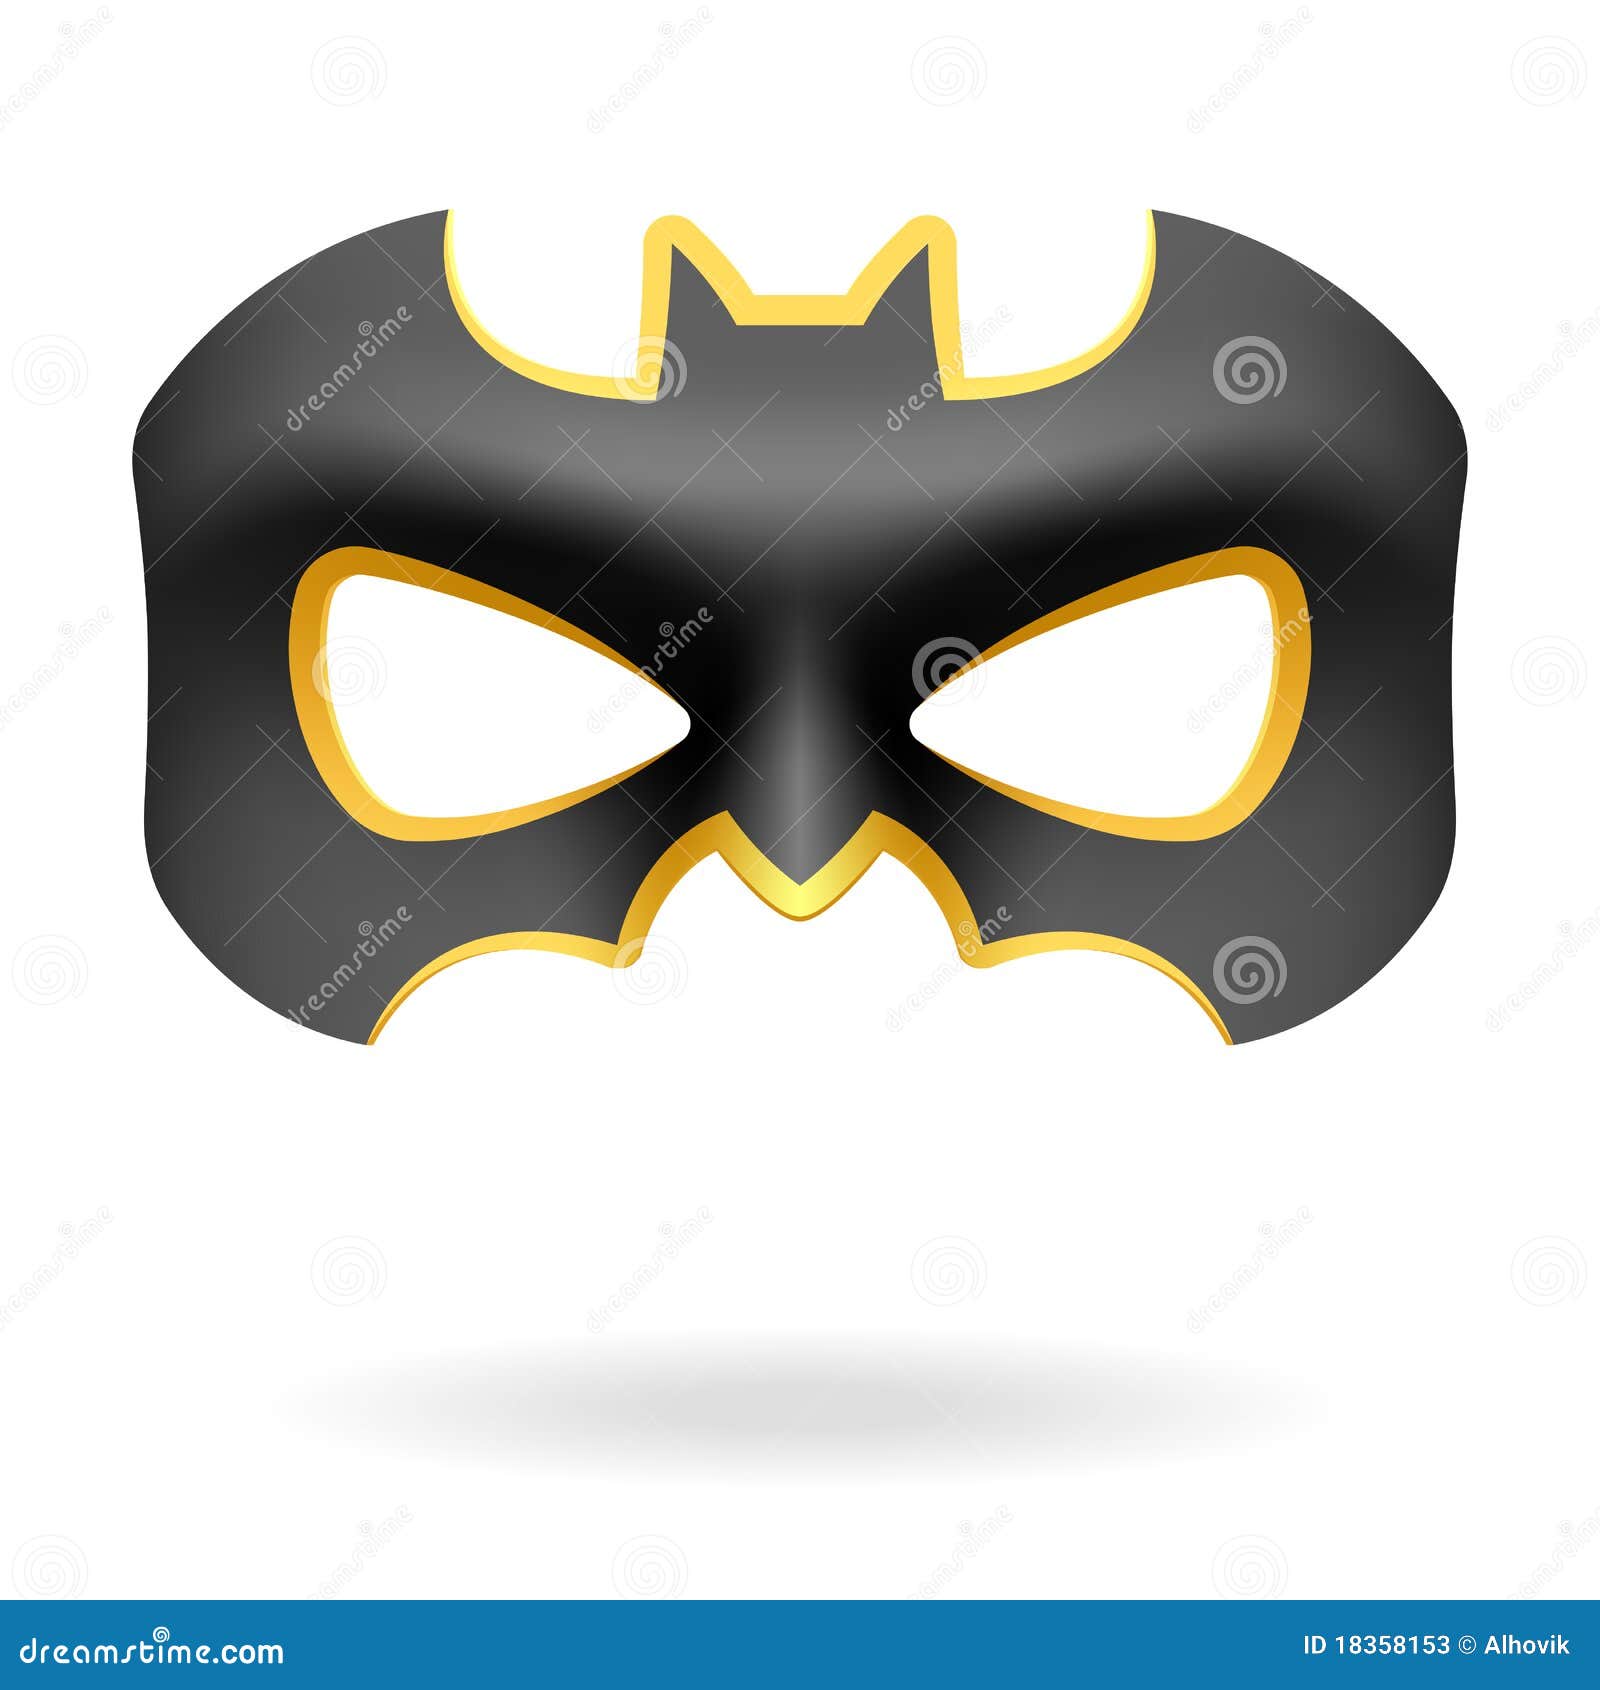 Batman Mask Stock Illustrations – 185 Batman Mask Stock Illustrations,  Vectors & Clipart - Dreamstime